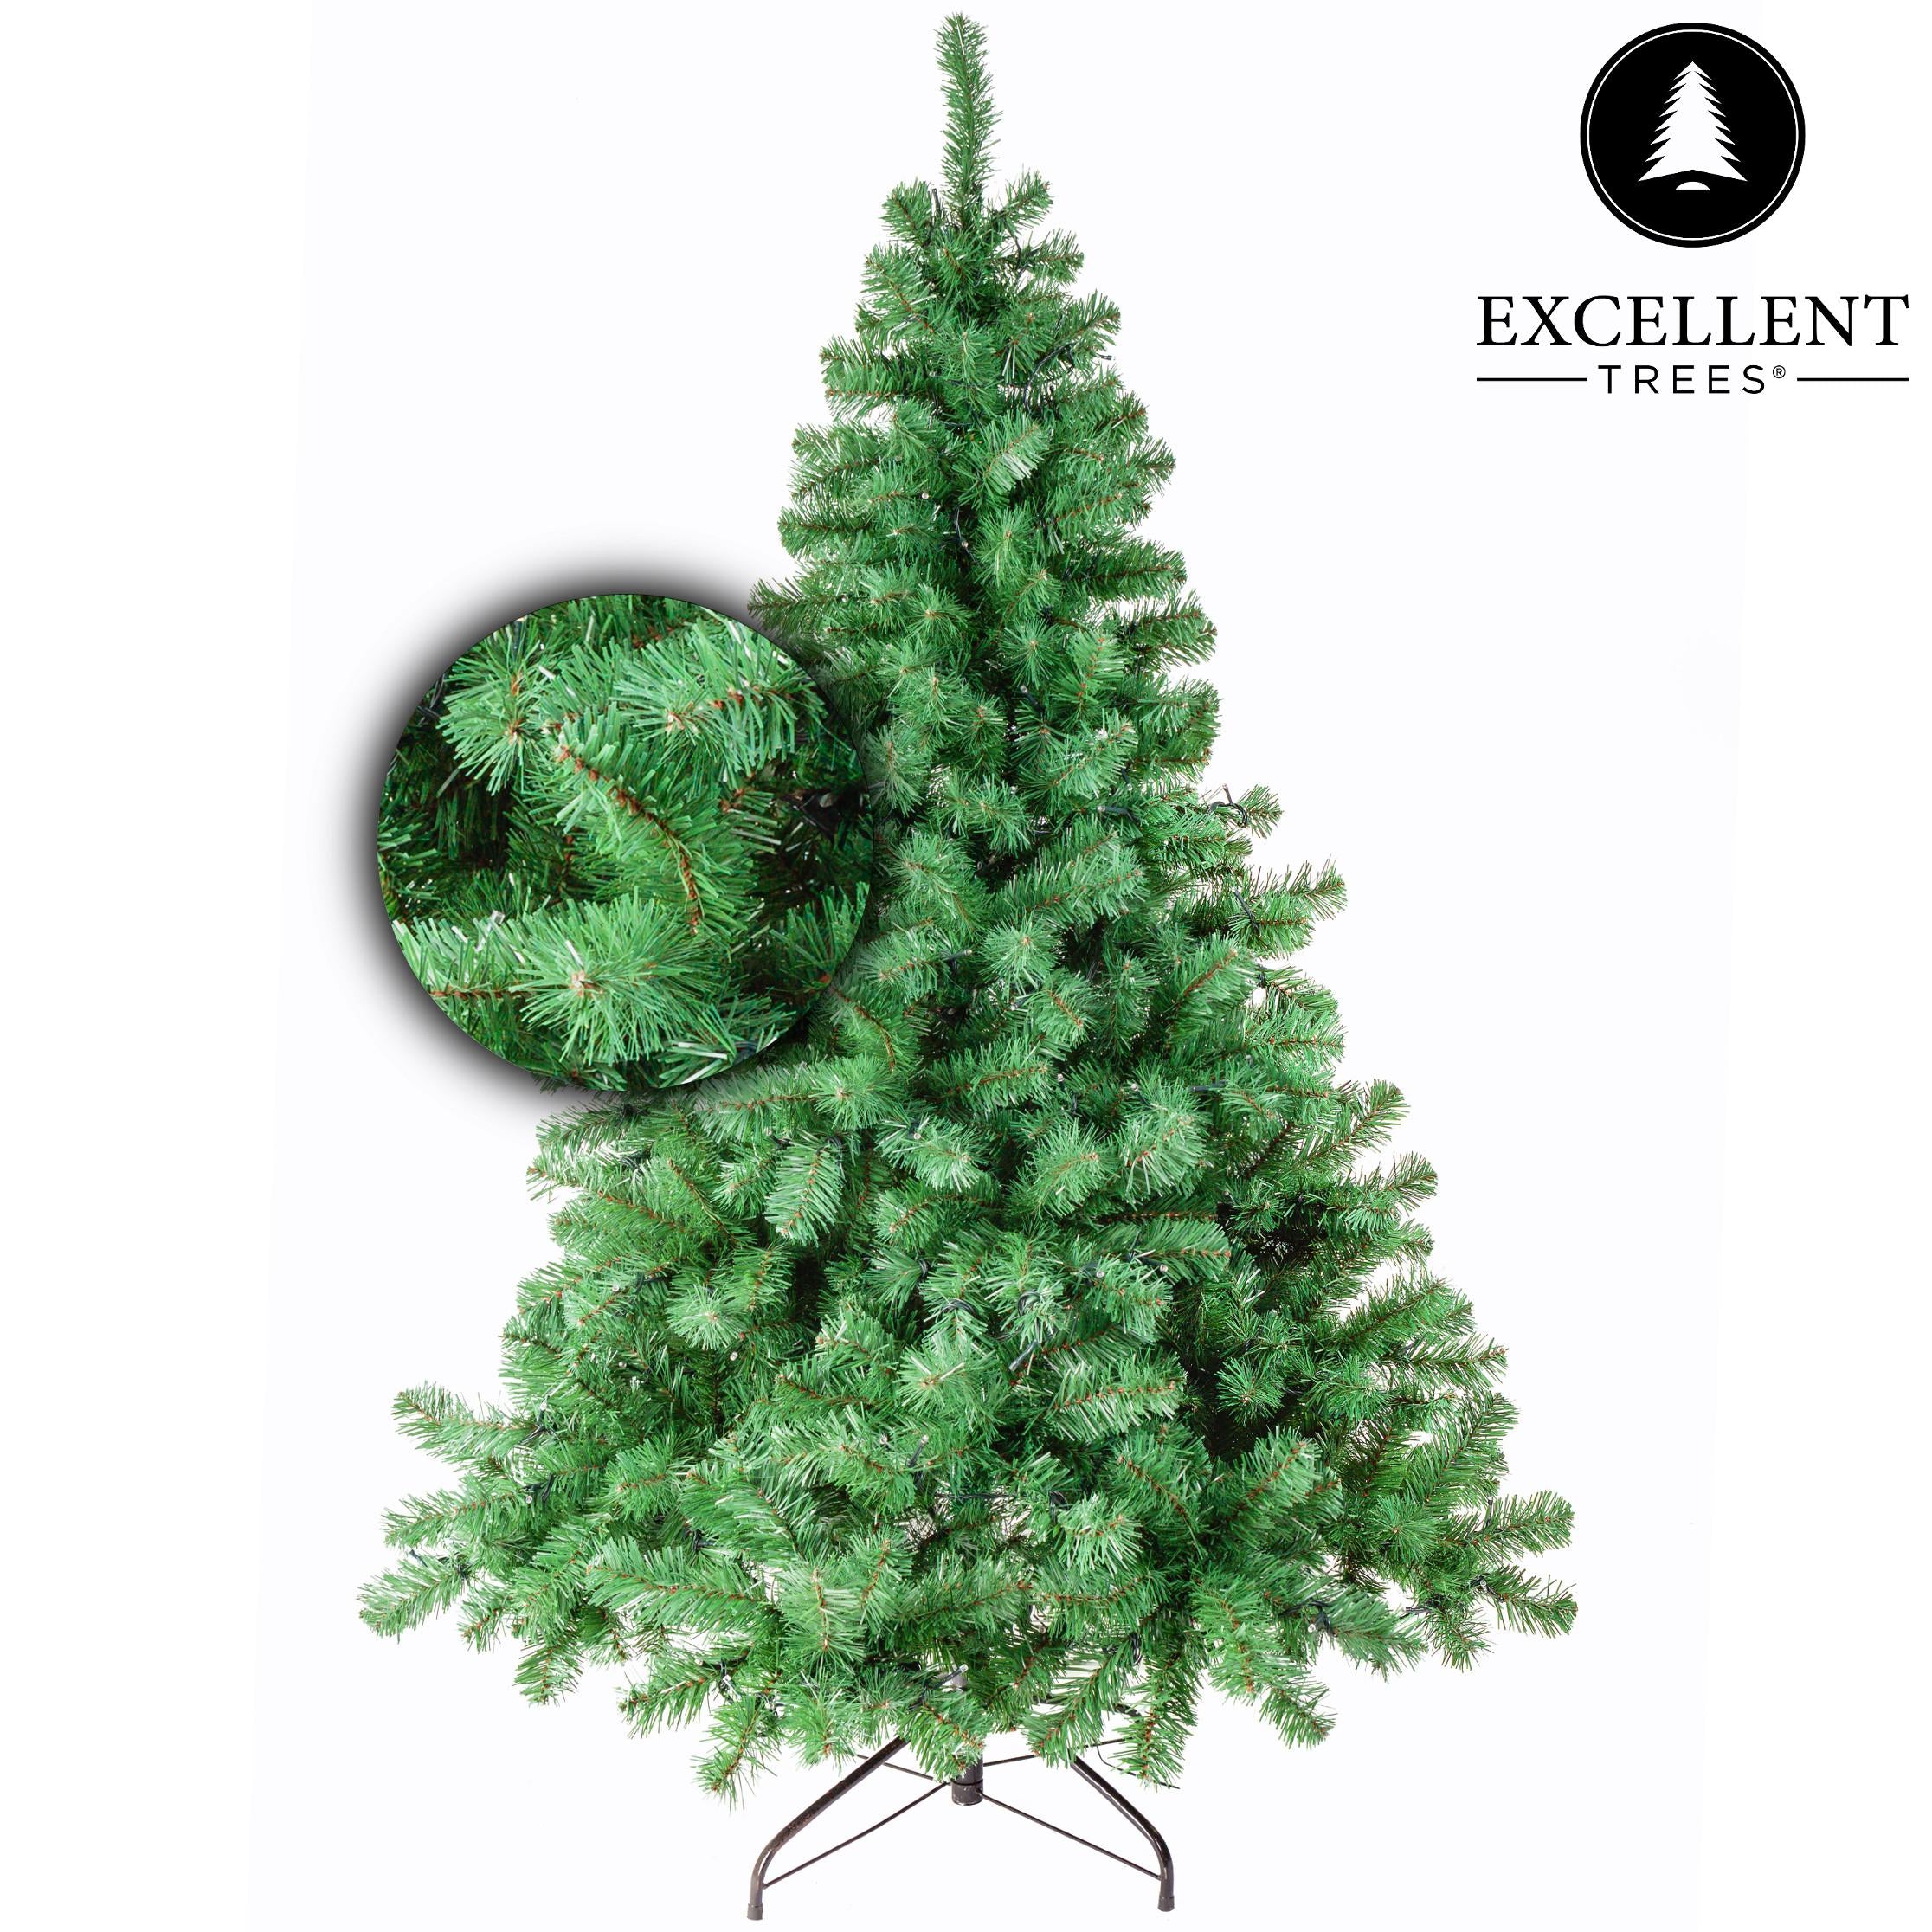 Weihnachtsbaum Excellent Trees® Stavanger Grün 150 cm - Luxusausführung